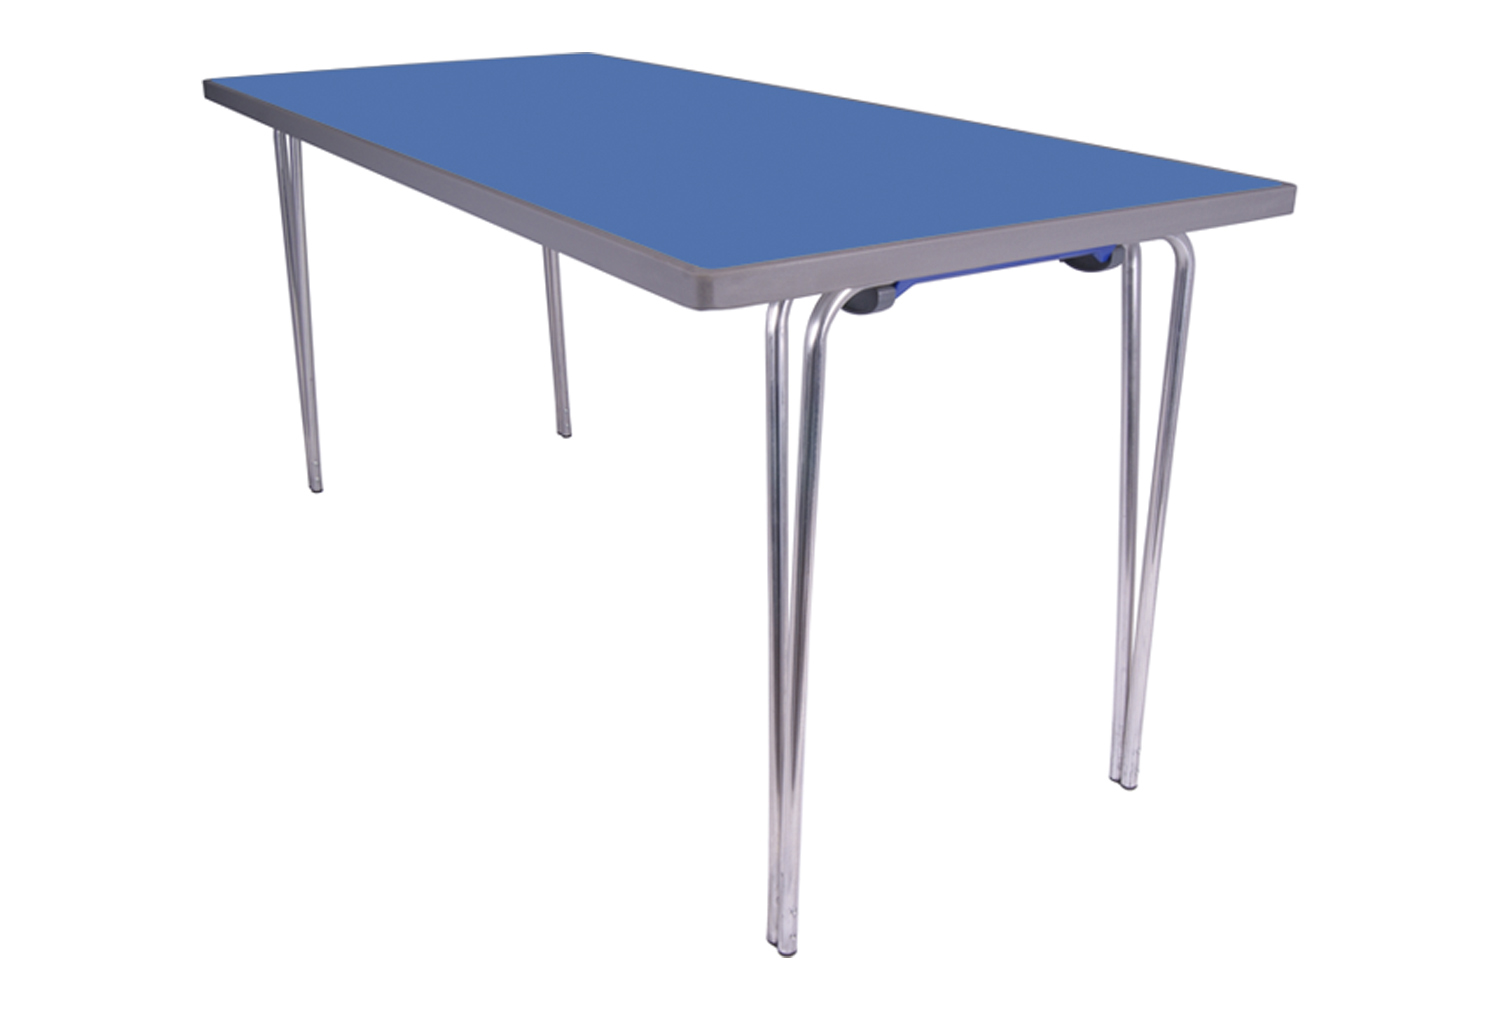 Gopak Premier Folding Tables, 152wx76d (cm), Azure Blue